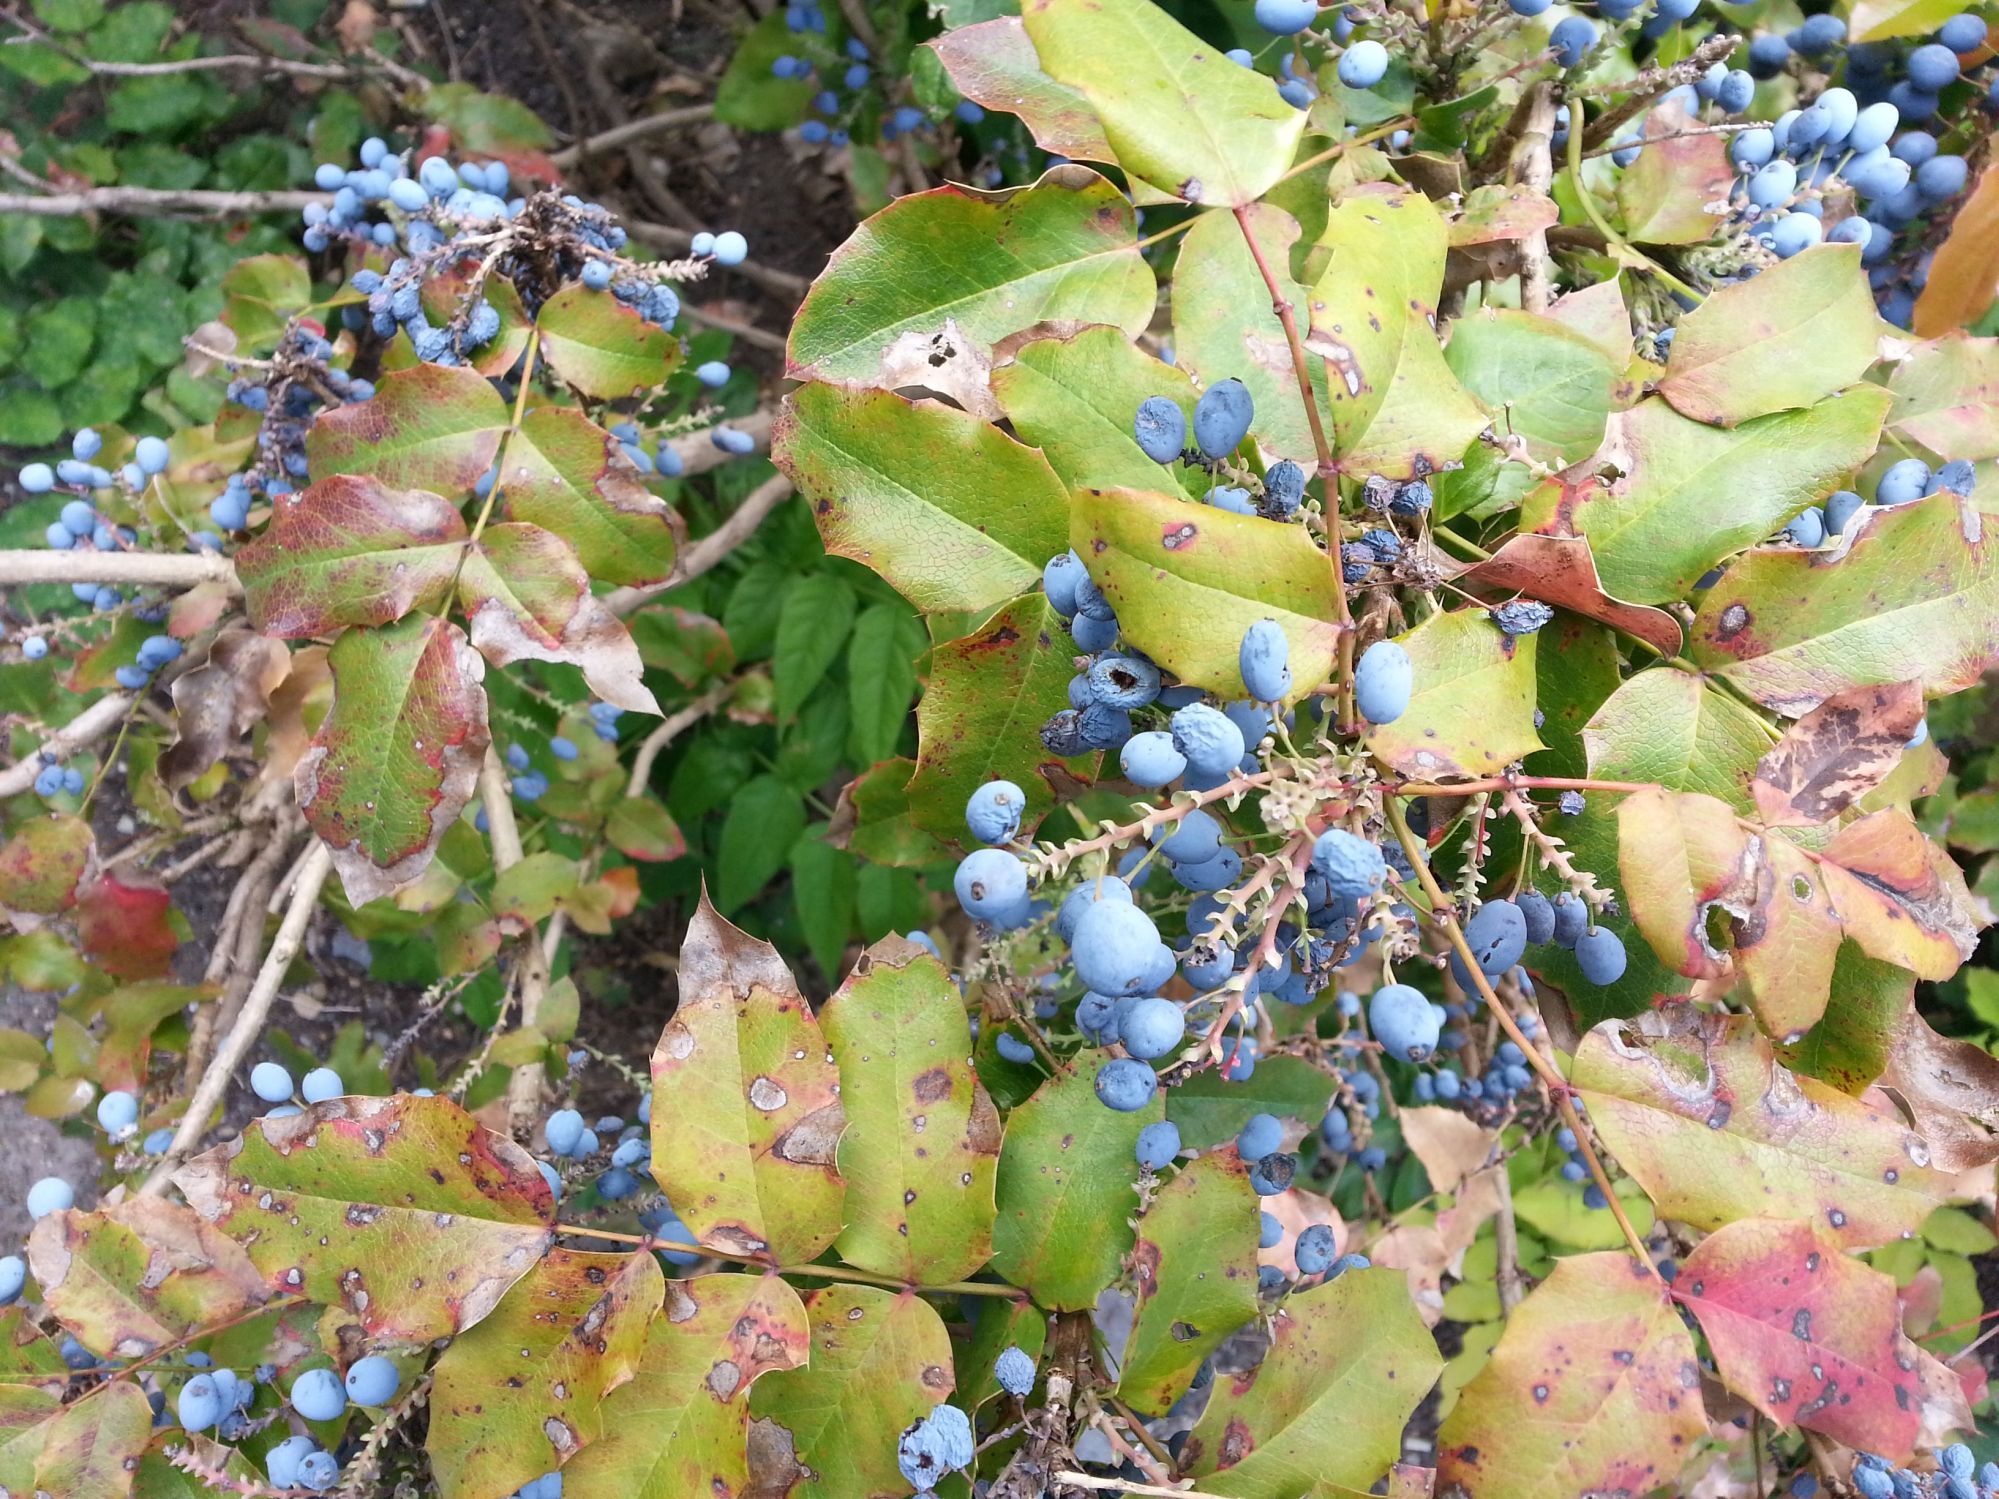 Blaue Beeren am Strauch, aber keine Blaubeeren-&gt; Mahonia ·  Pflanzenbestimmung & Pflanzensuche · GREEN24 Pflanzen & Garten Forum